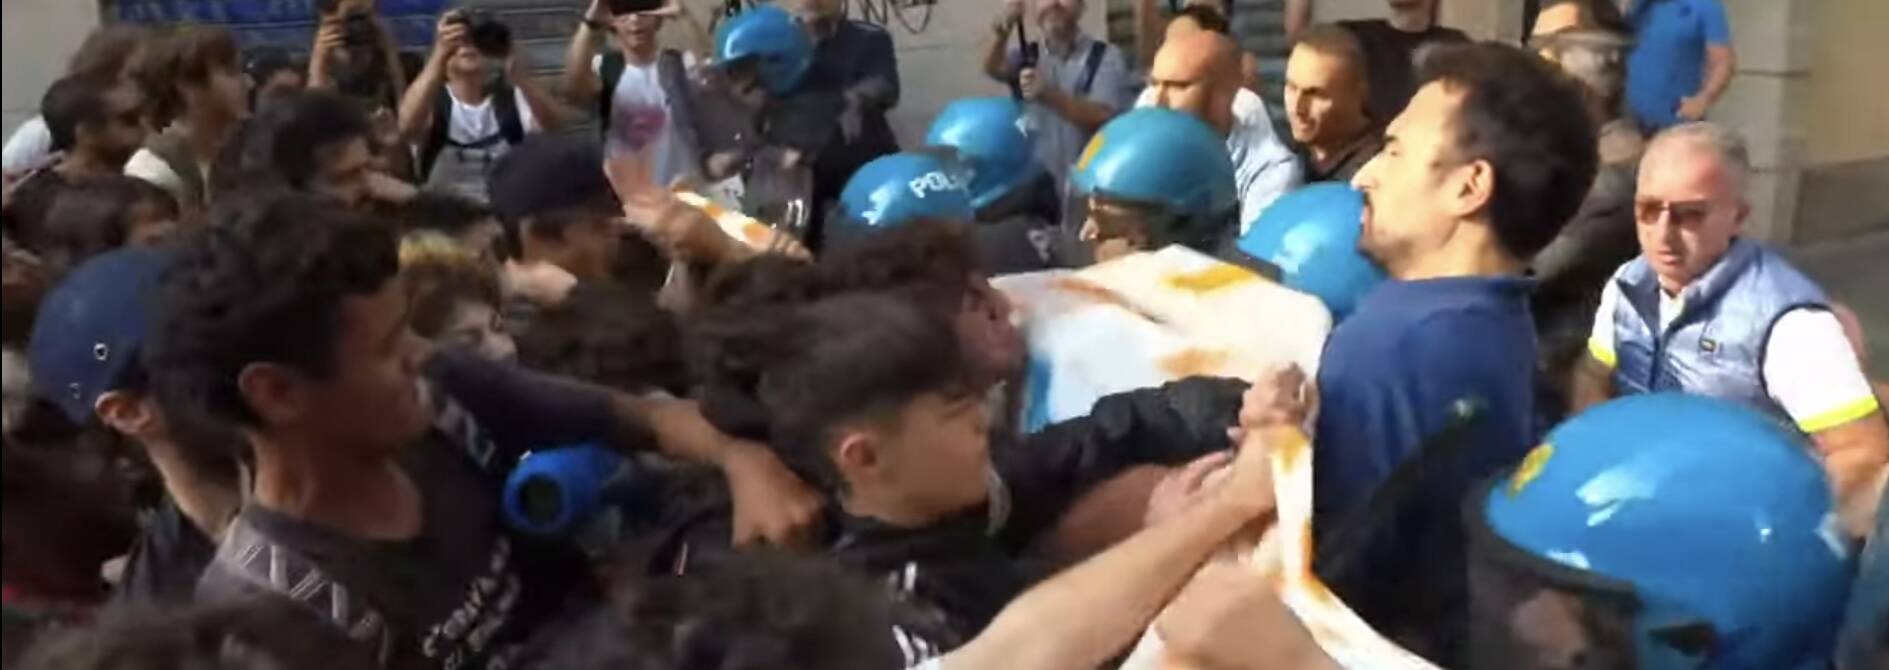 La premier Meloni contestata a Torino: scontri tra polizia e studenti